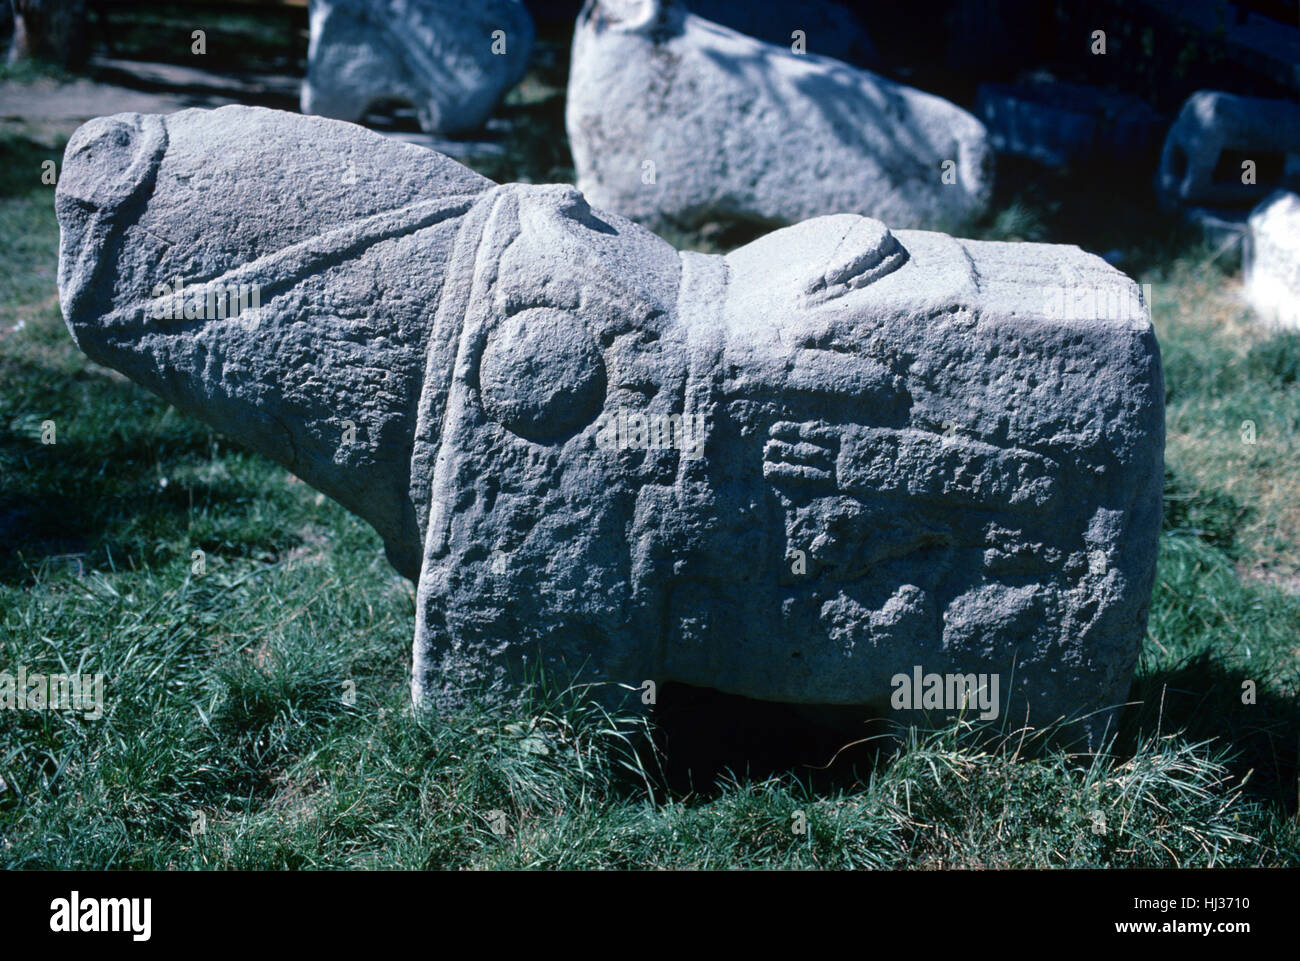 Cheval en pierre taillée, sculptée avec selle, étriers et faisceau, un Urartian sculptures funéraires de l'âge du Fer Urarta Civilisations (c8th-c6thBC), autour de Van Turquie Banque D'Images